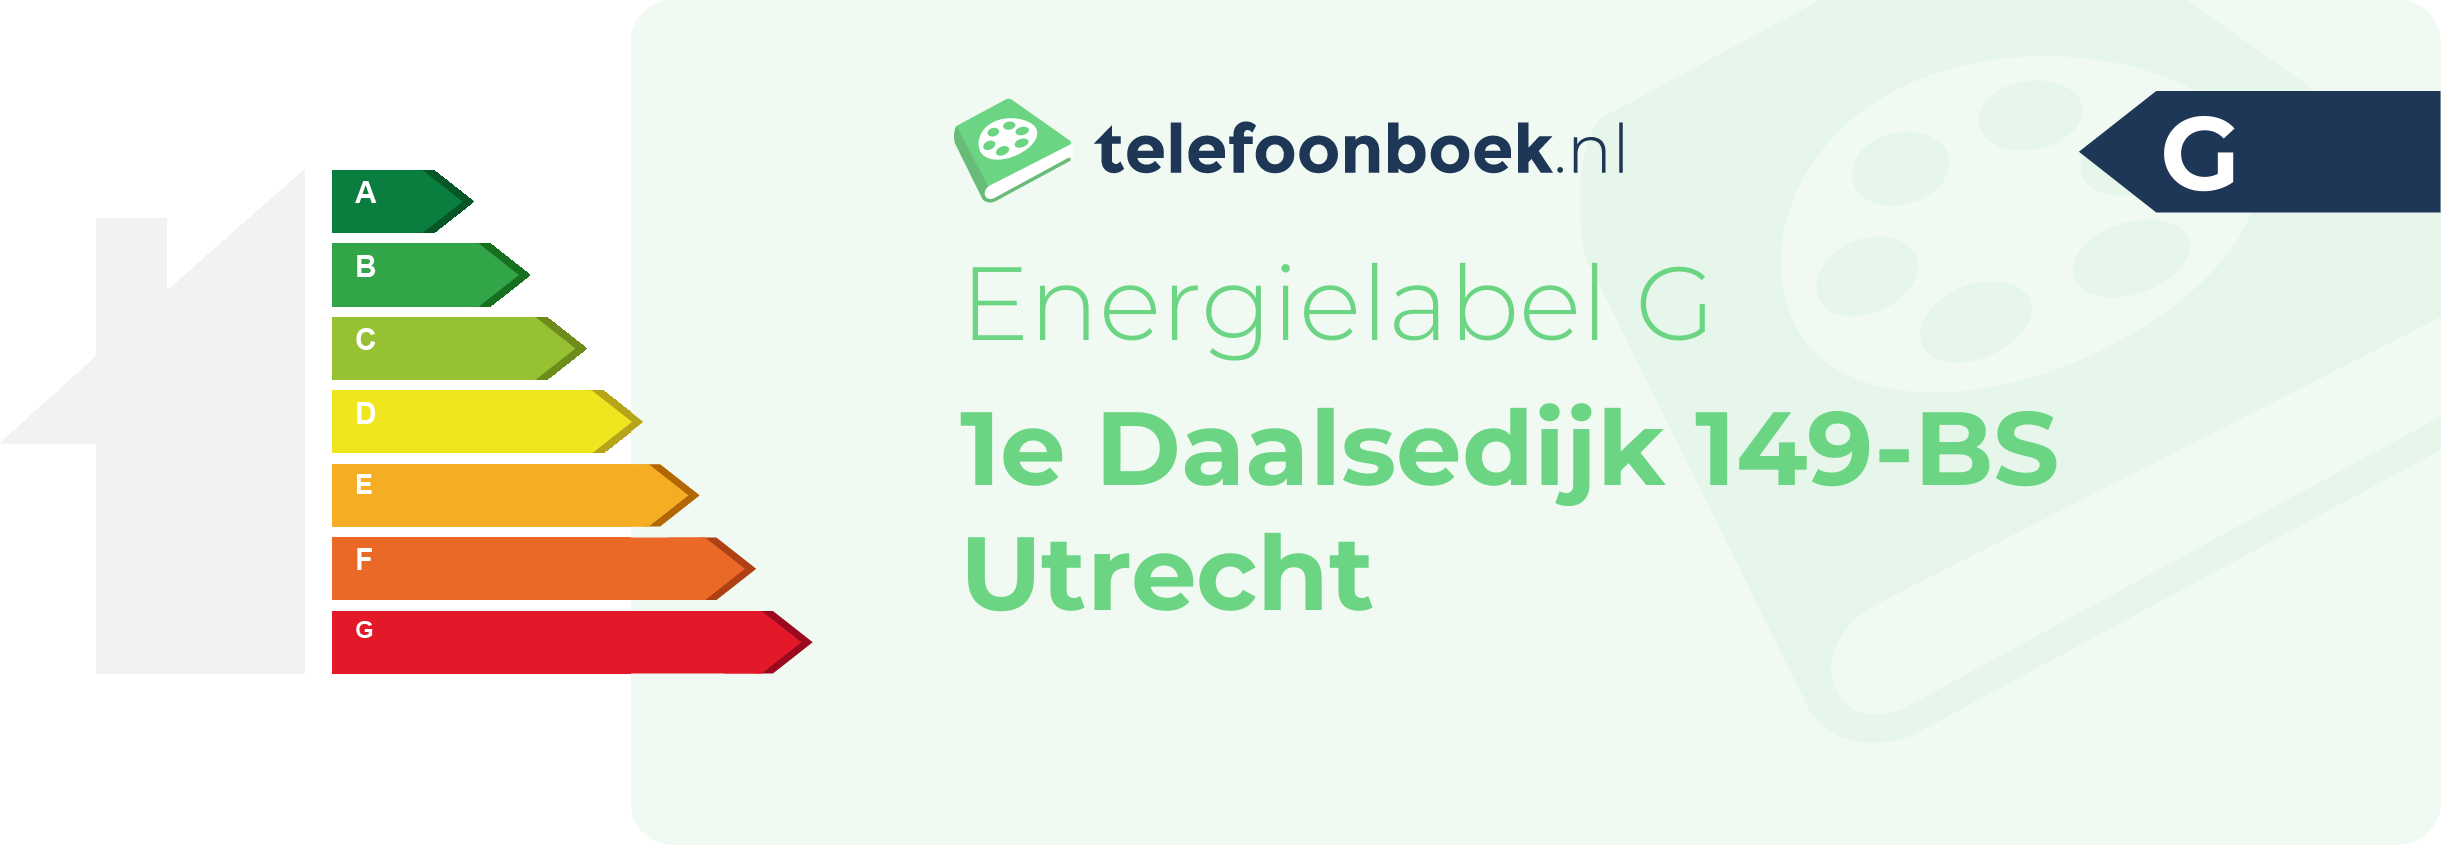 Energielabel 1e Daalsedijk 149-BS Utrecht